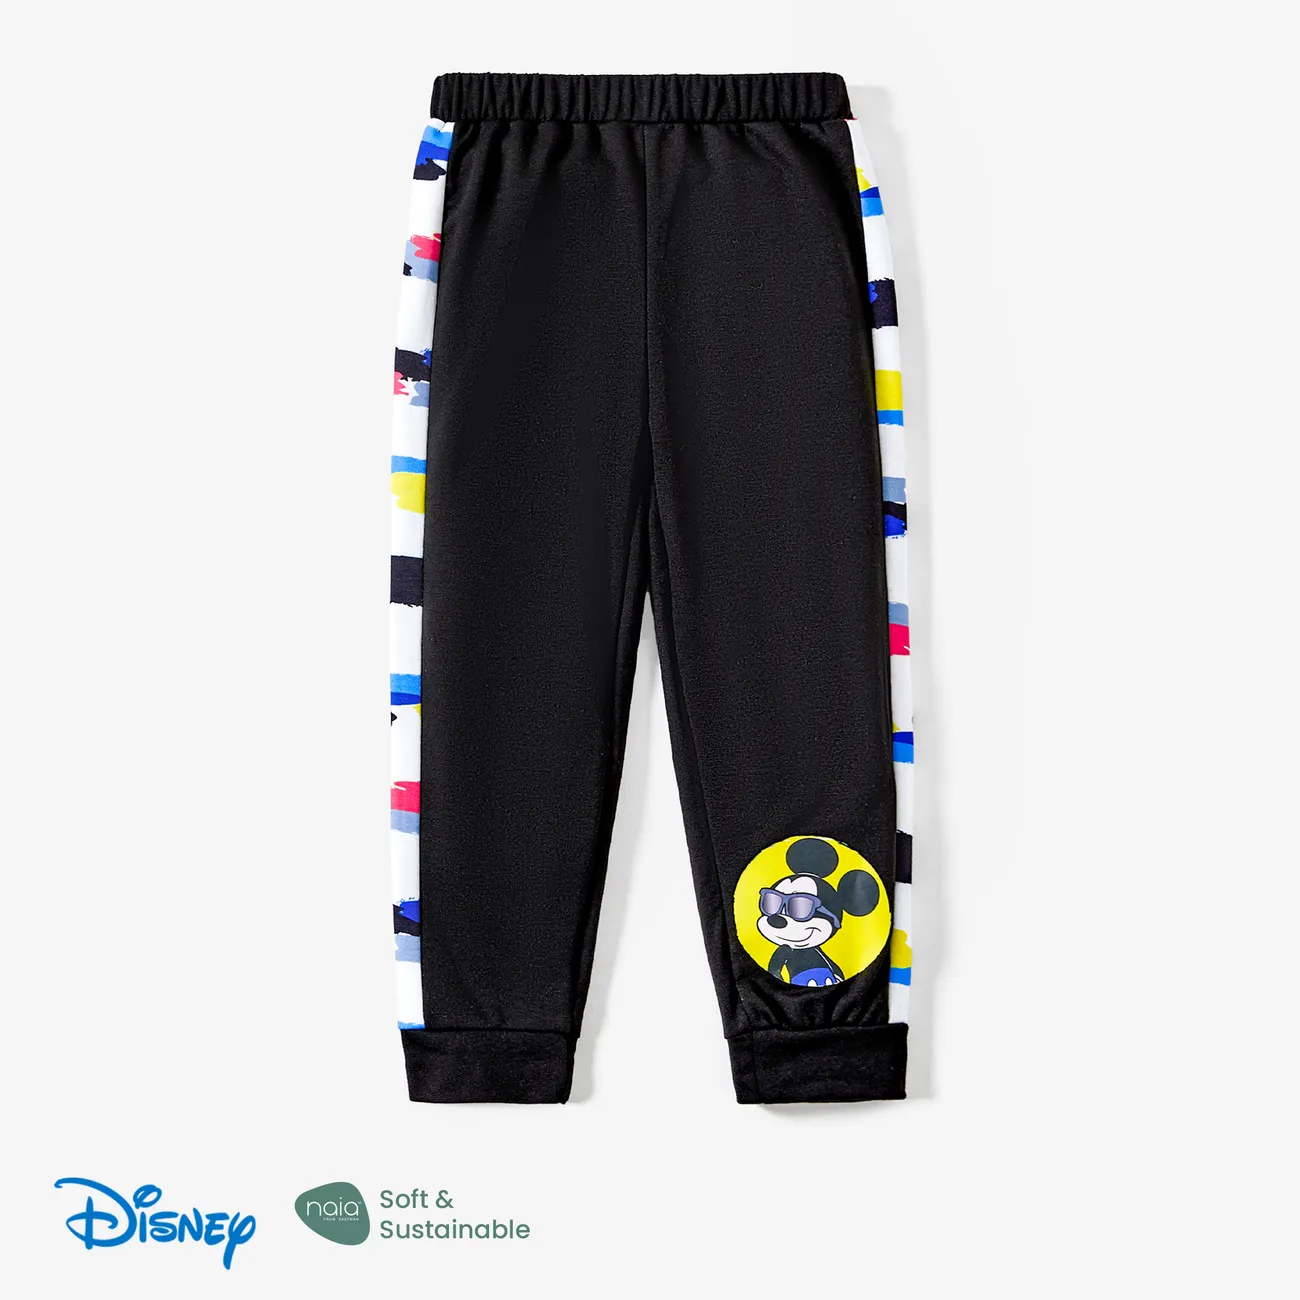 Disney Mickey and Friends 1pc Toddler/Kid Girl/Boy Naia™ Character Print Tshirt or Pants Black big image 1